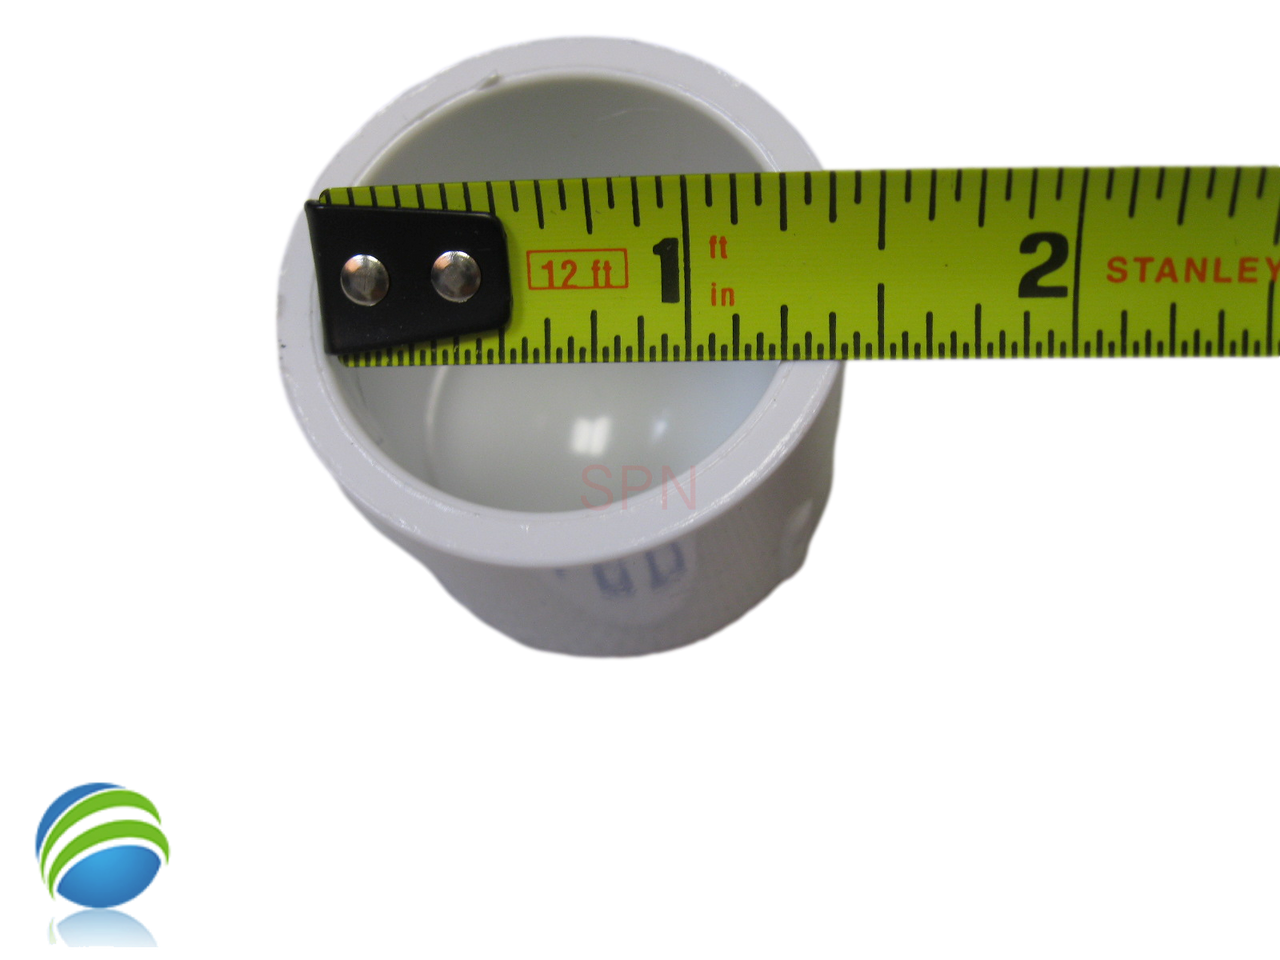 1" PVC Cap For Hot Tub and Spa Plumbing - Inside Diameter